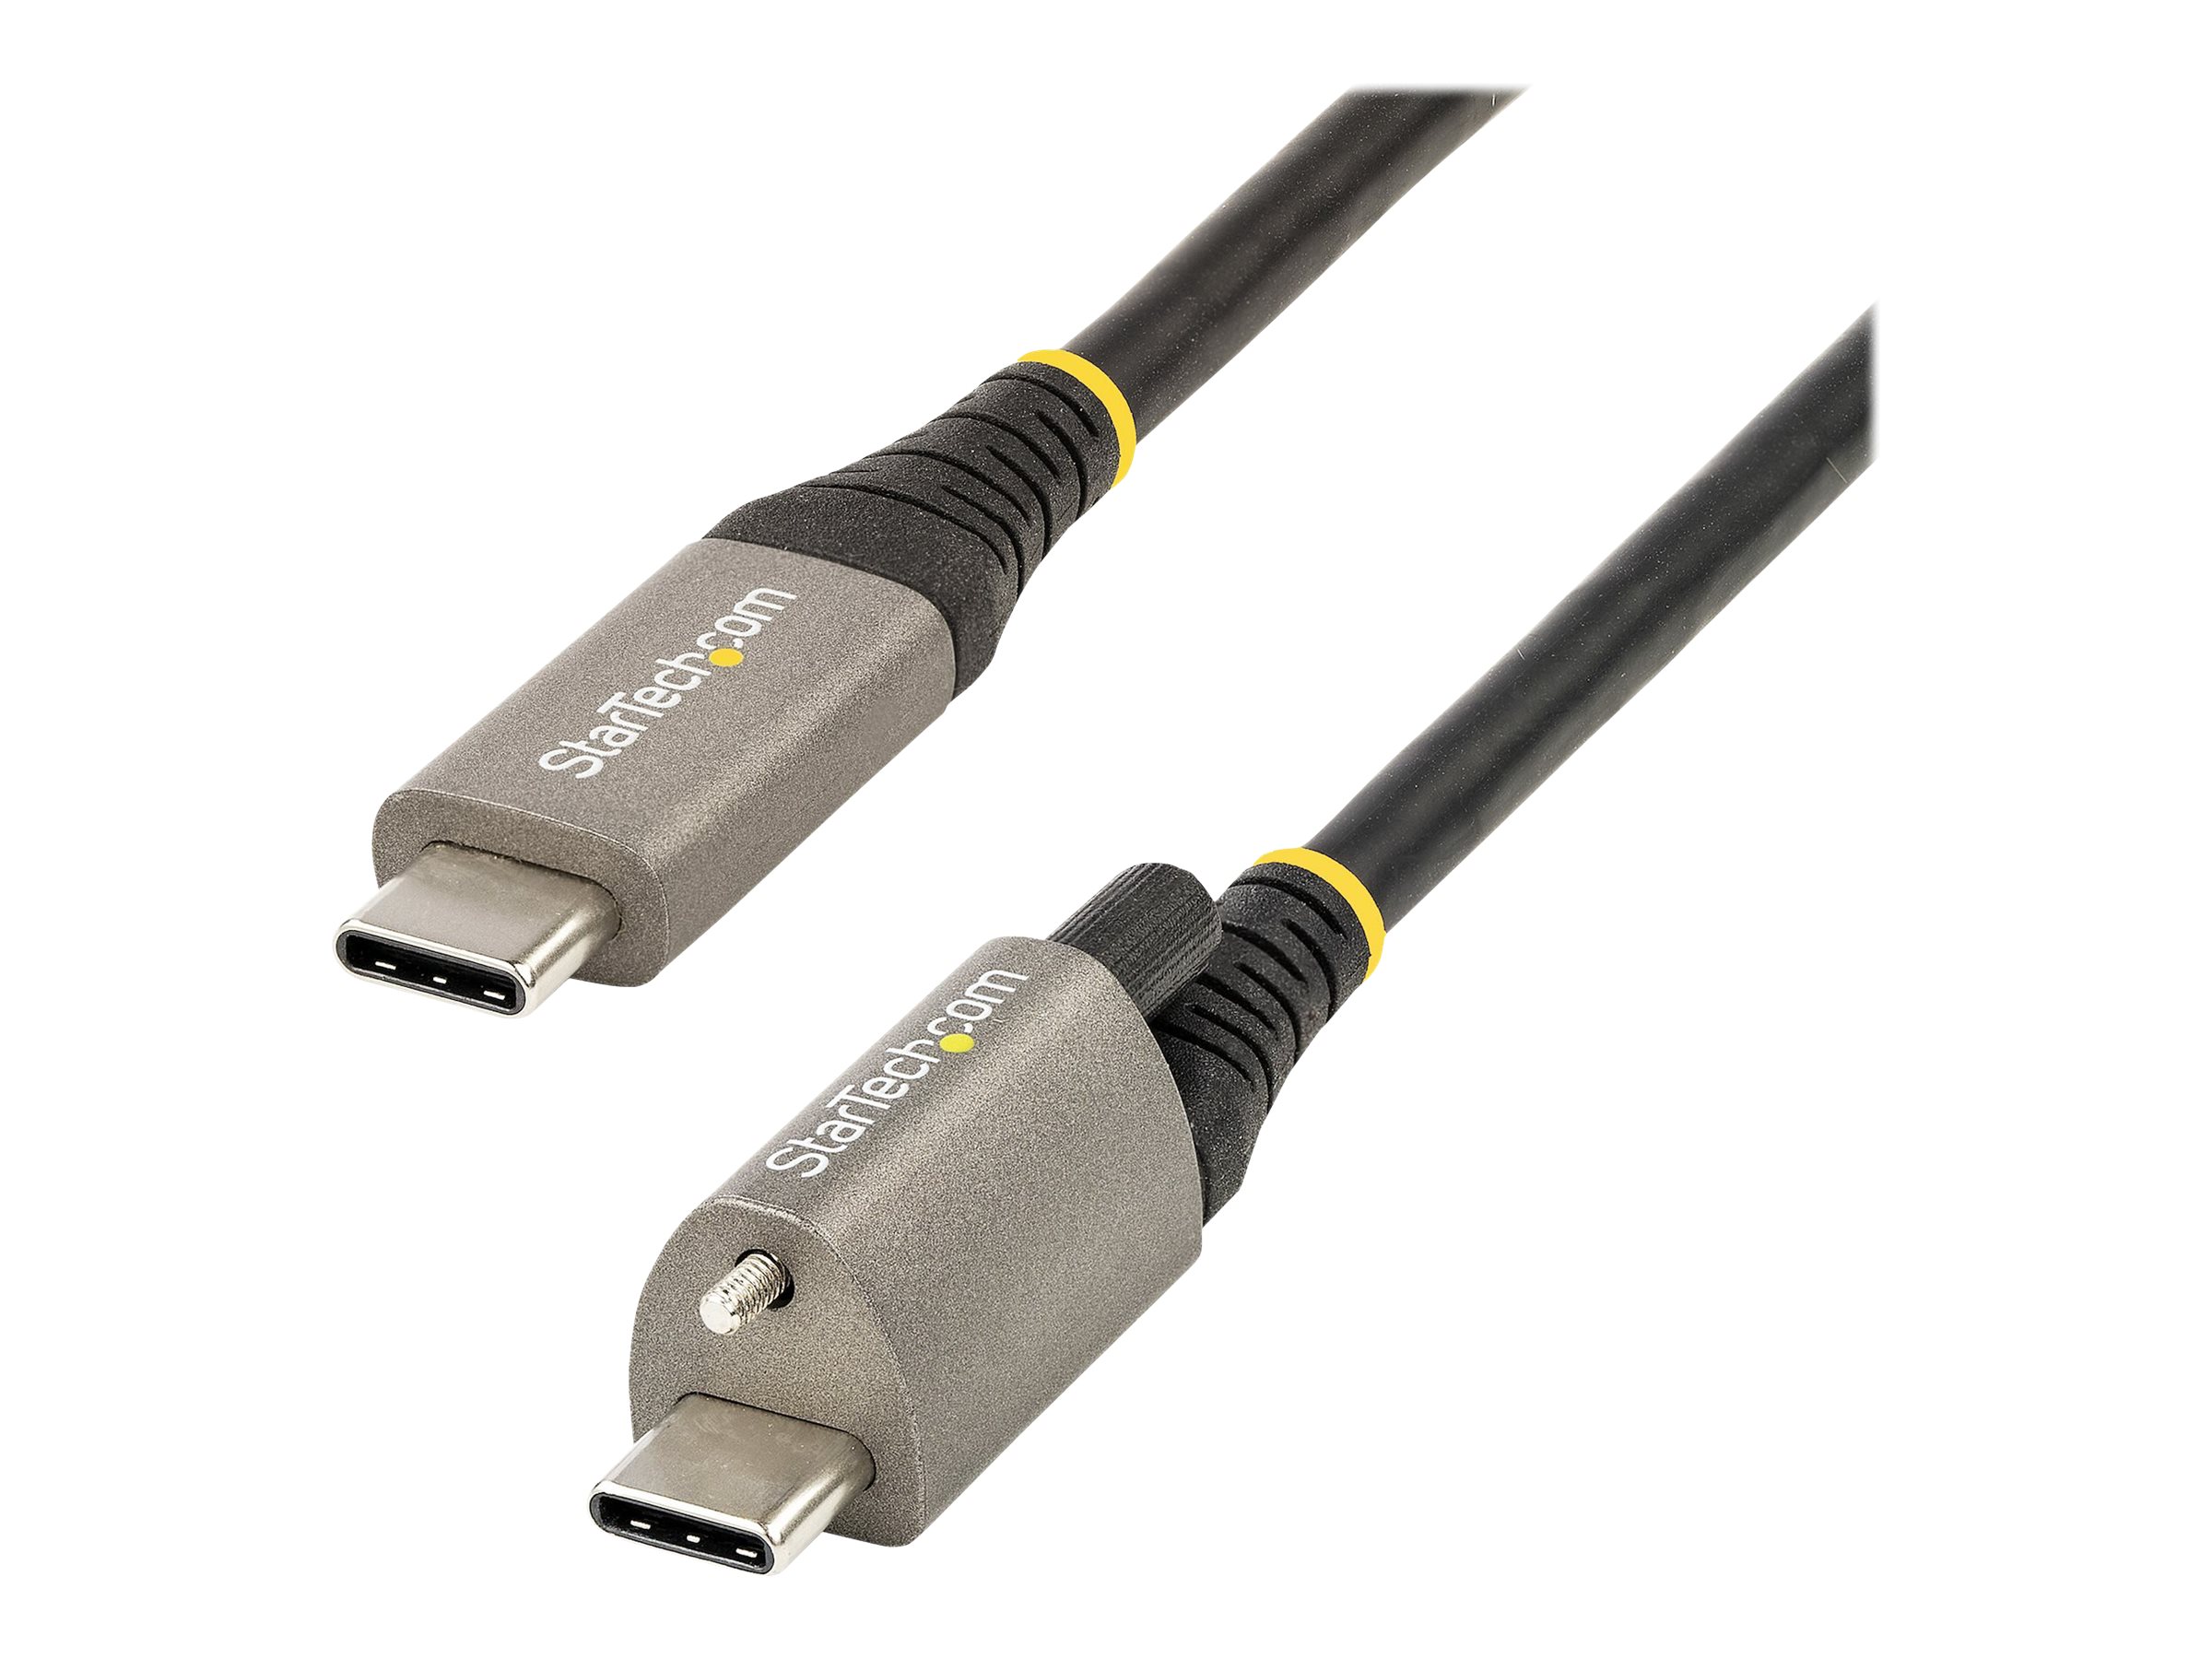 StarTech.com 50cm USB-C Kabel mit Oberseite Schraubensicherung 10Gbit/s - USB 3.1/3.2 Gen 2 Typ-C Kabel - 100W (5A) Power Delivery, DP-Alt-Mode, USB-C-Kabel zum Laden/Synchronisieren (USB31CCTLKV50CM) - USB-Kabel - 24 pin USB-C (M) gerade/verriegelnd...